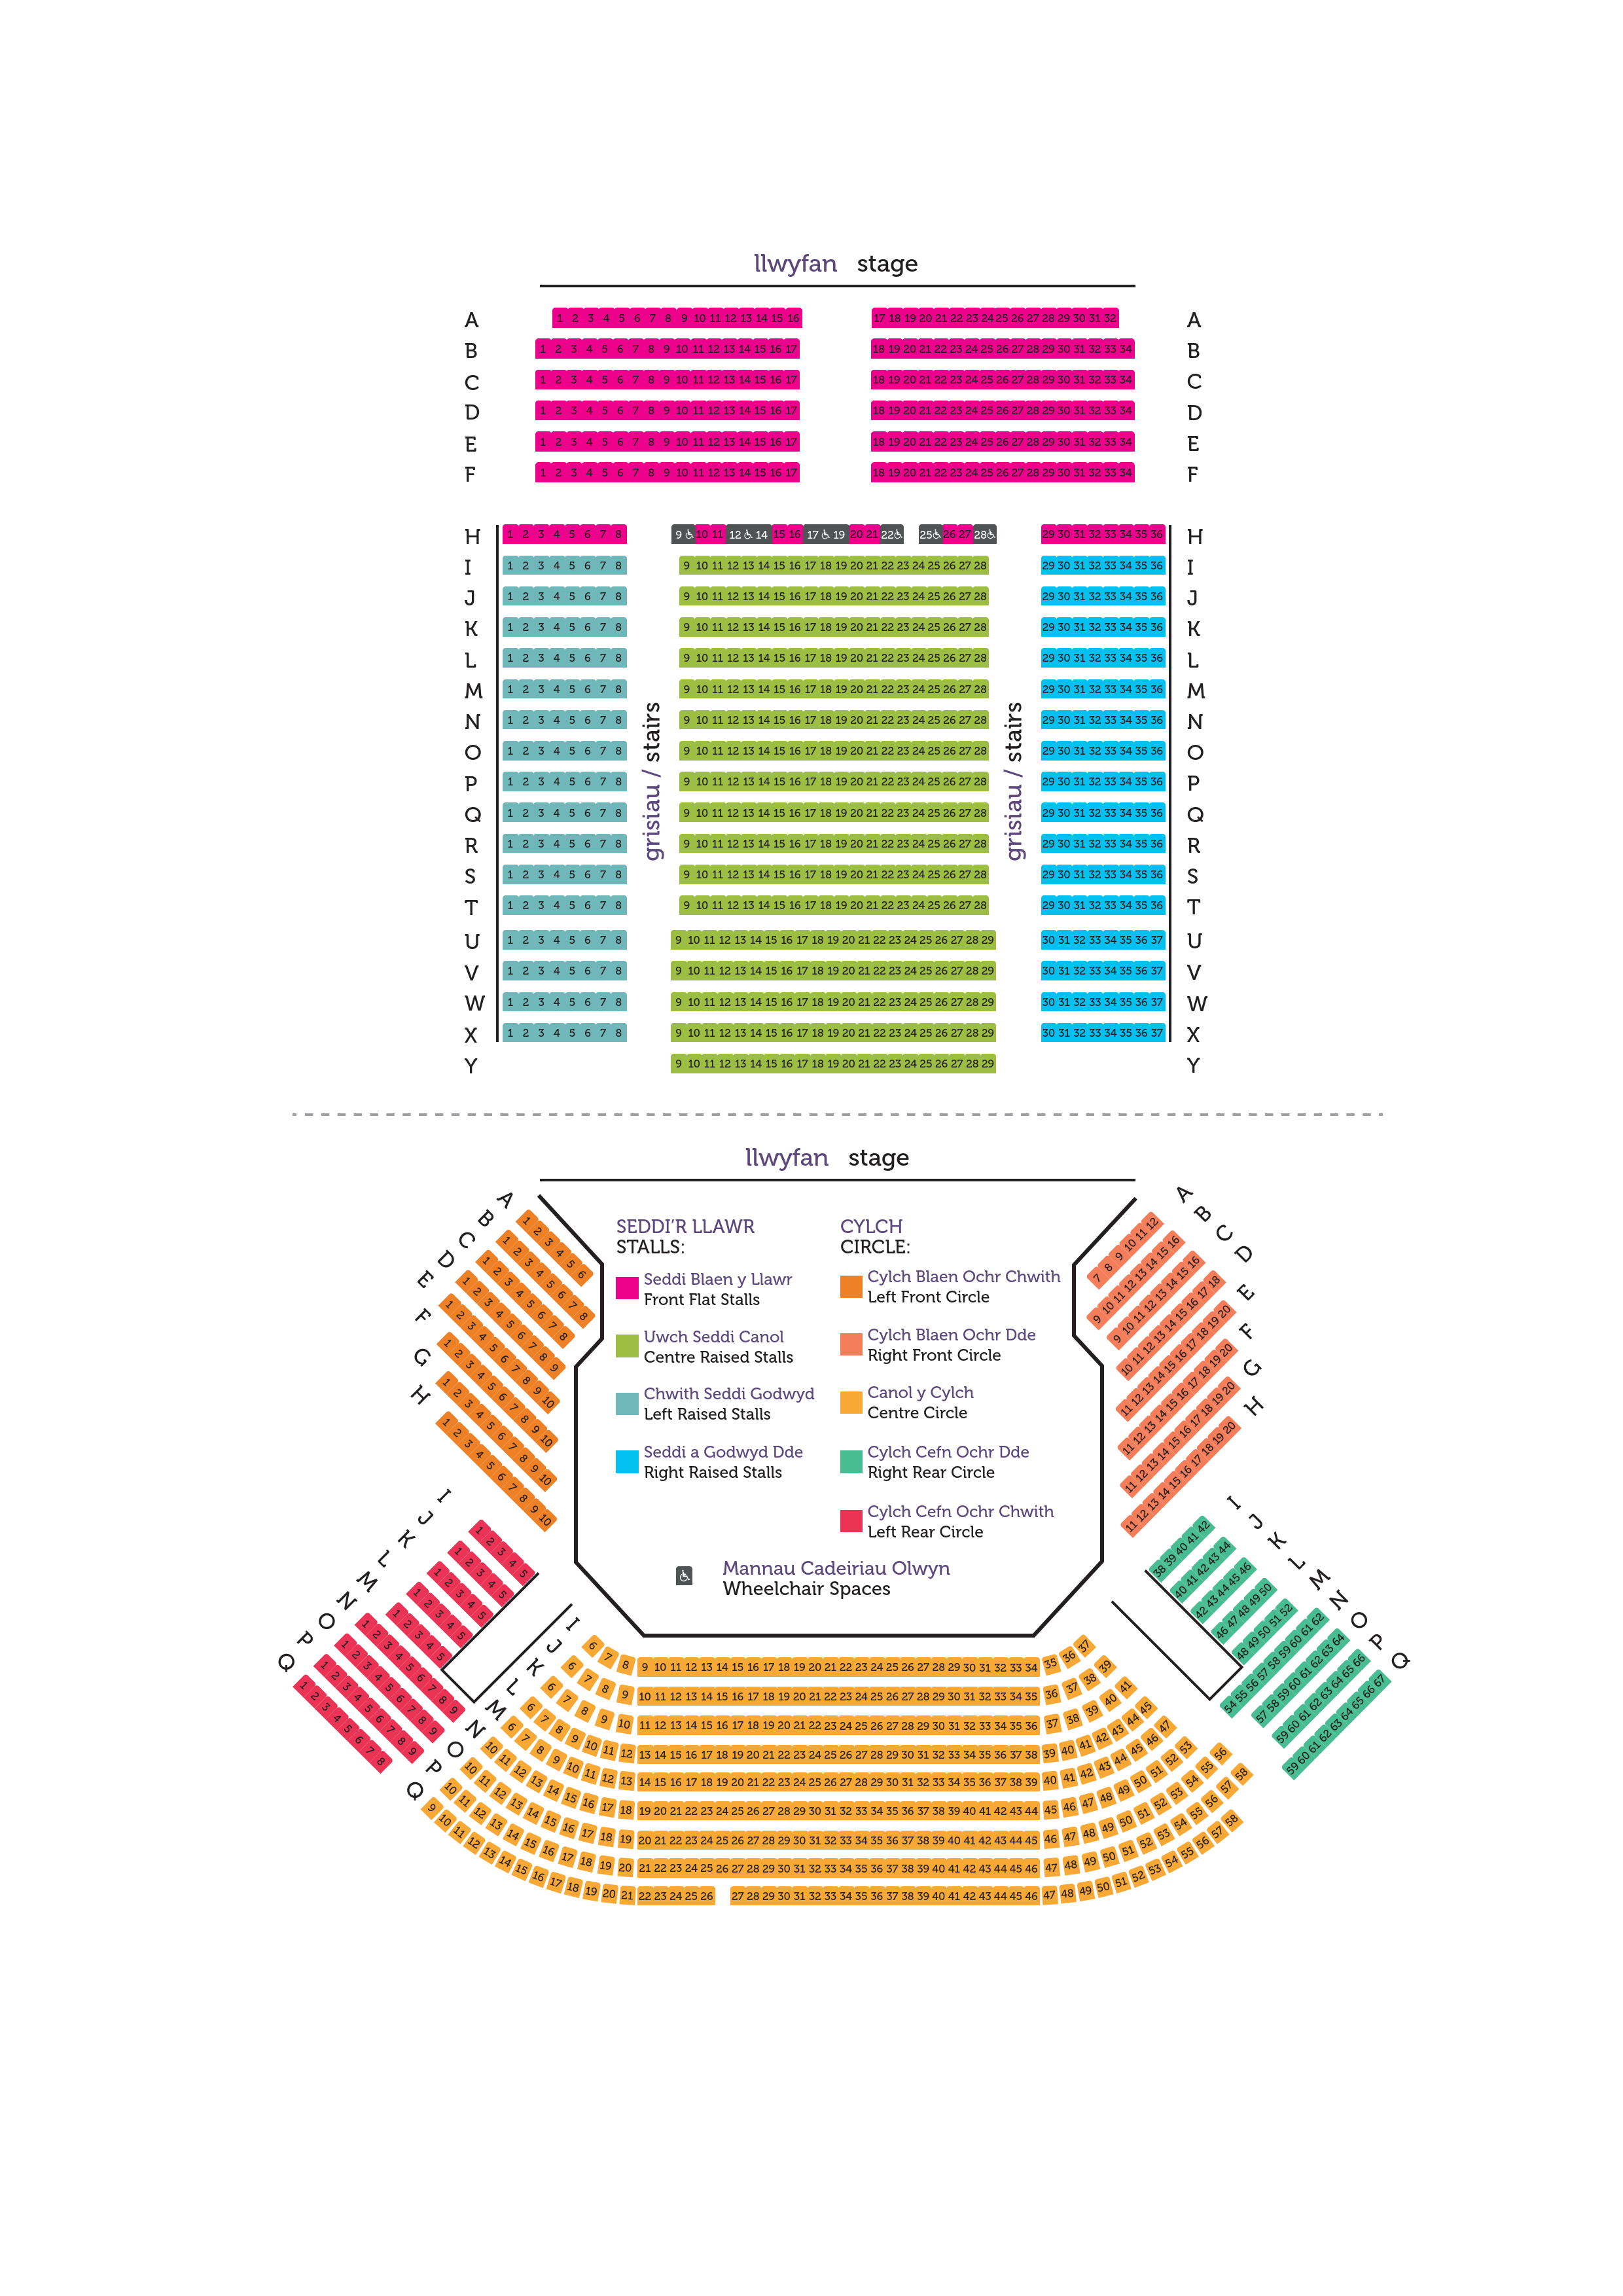 image of seating plan